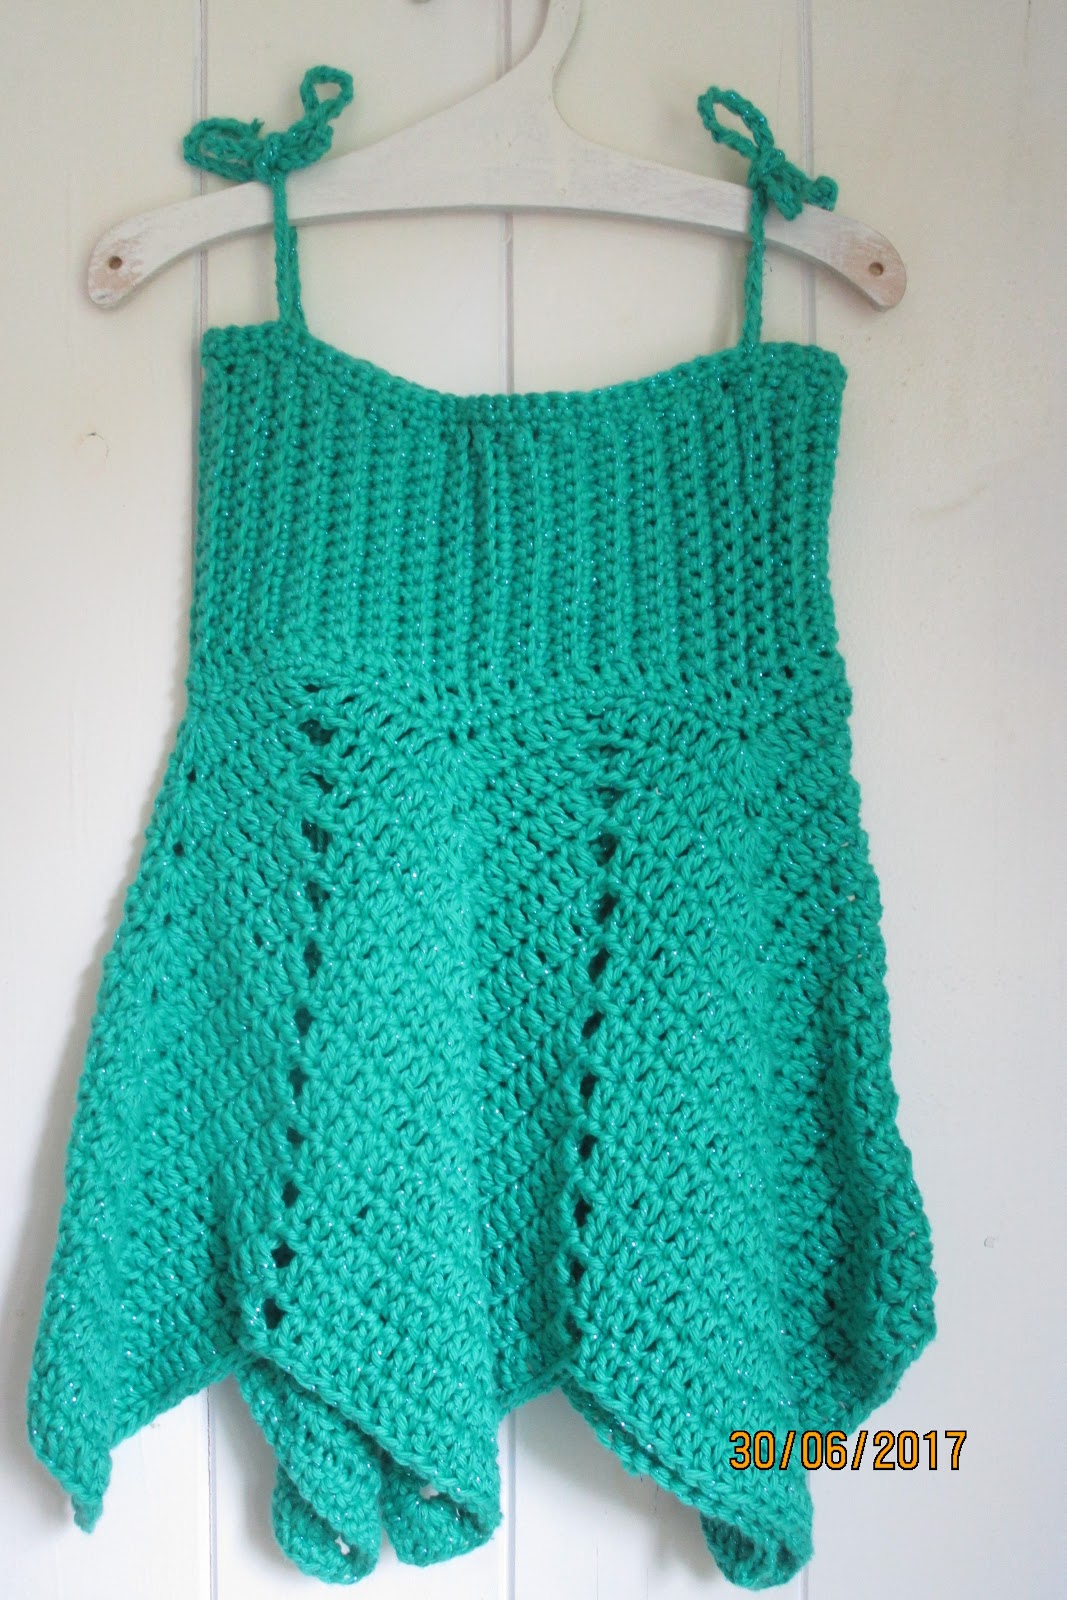 E.NeshaCrochet: A little summer dress.